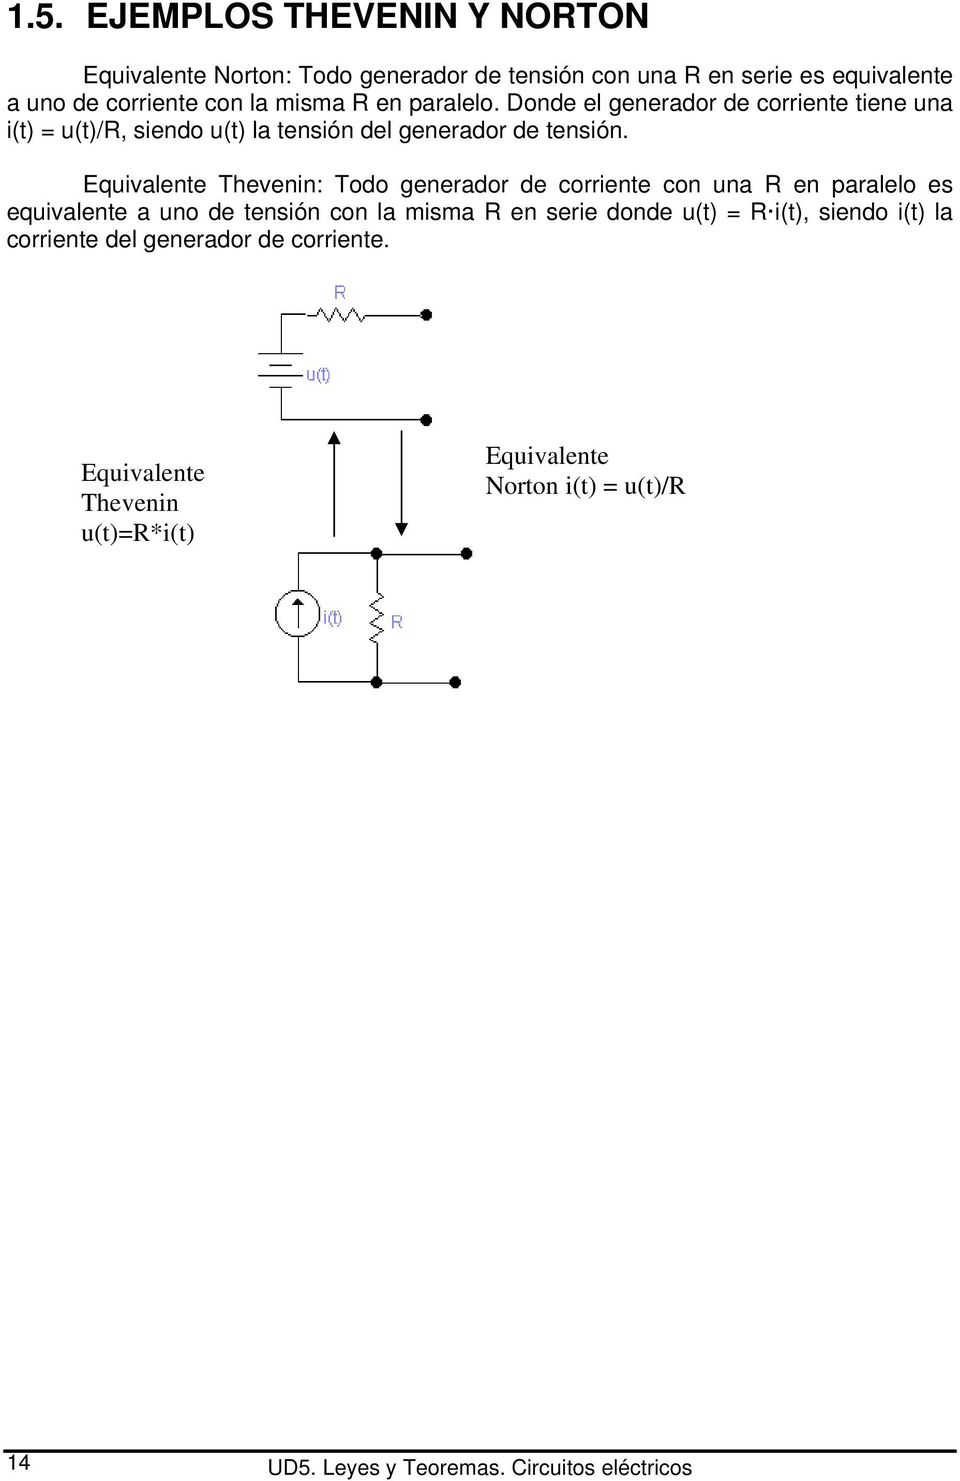 Equivalente Thevenin: Todo generador de corriente con una R en paralelo es equivalente a uno de tensión con la misma R en serie donde u(t) = R